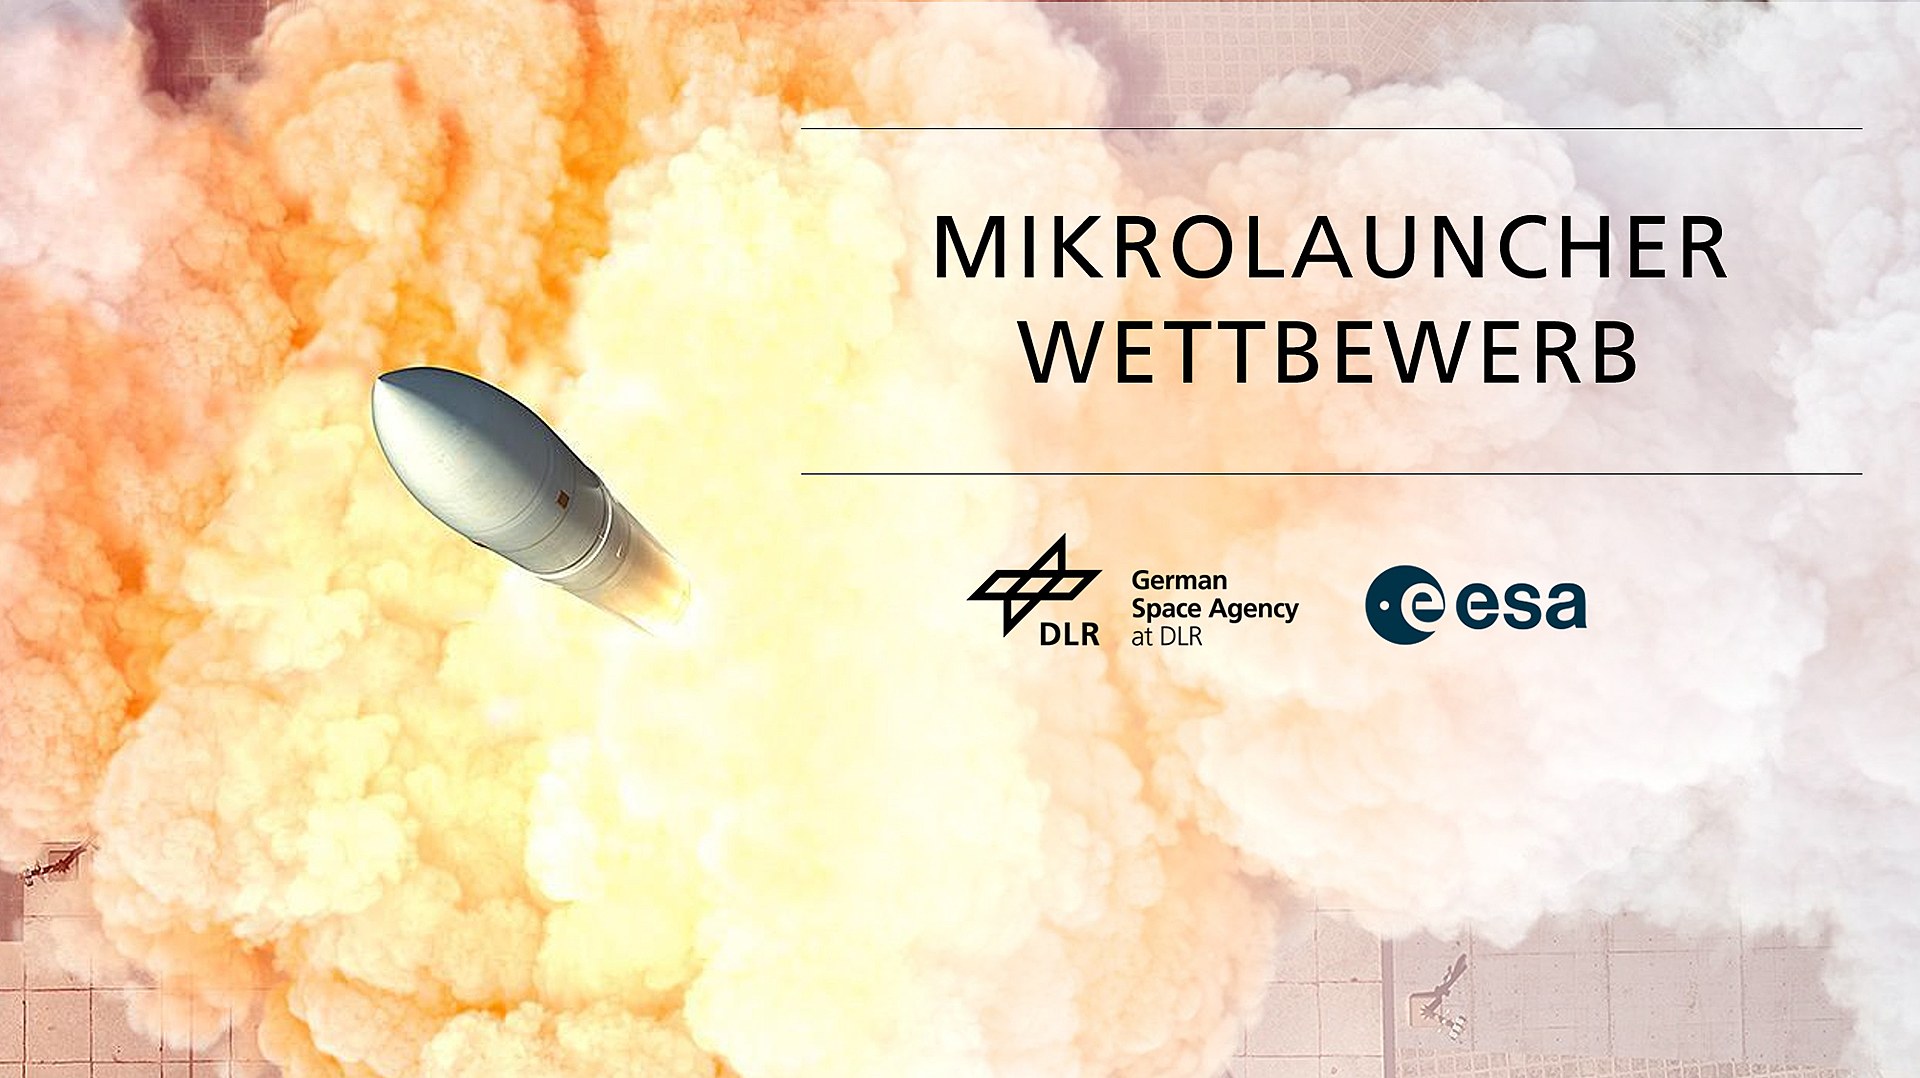 Mikrolauncher-Wettbewerb der Deutschen Raumfahrtagentur im DLR